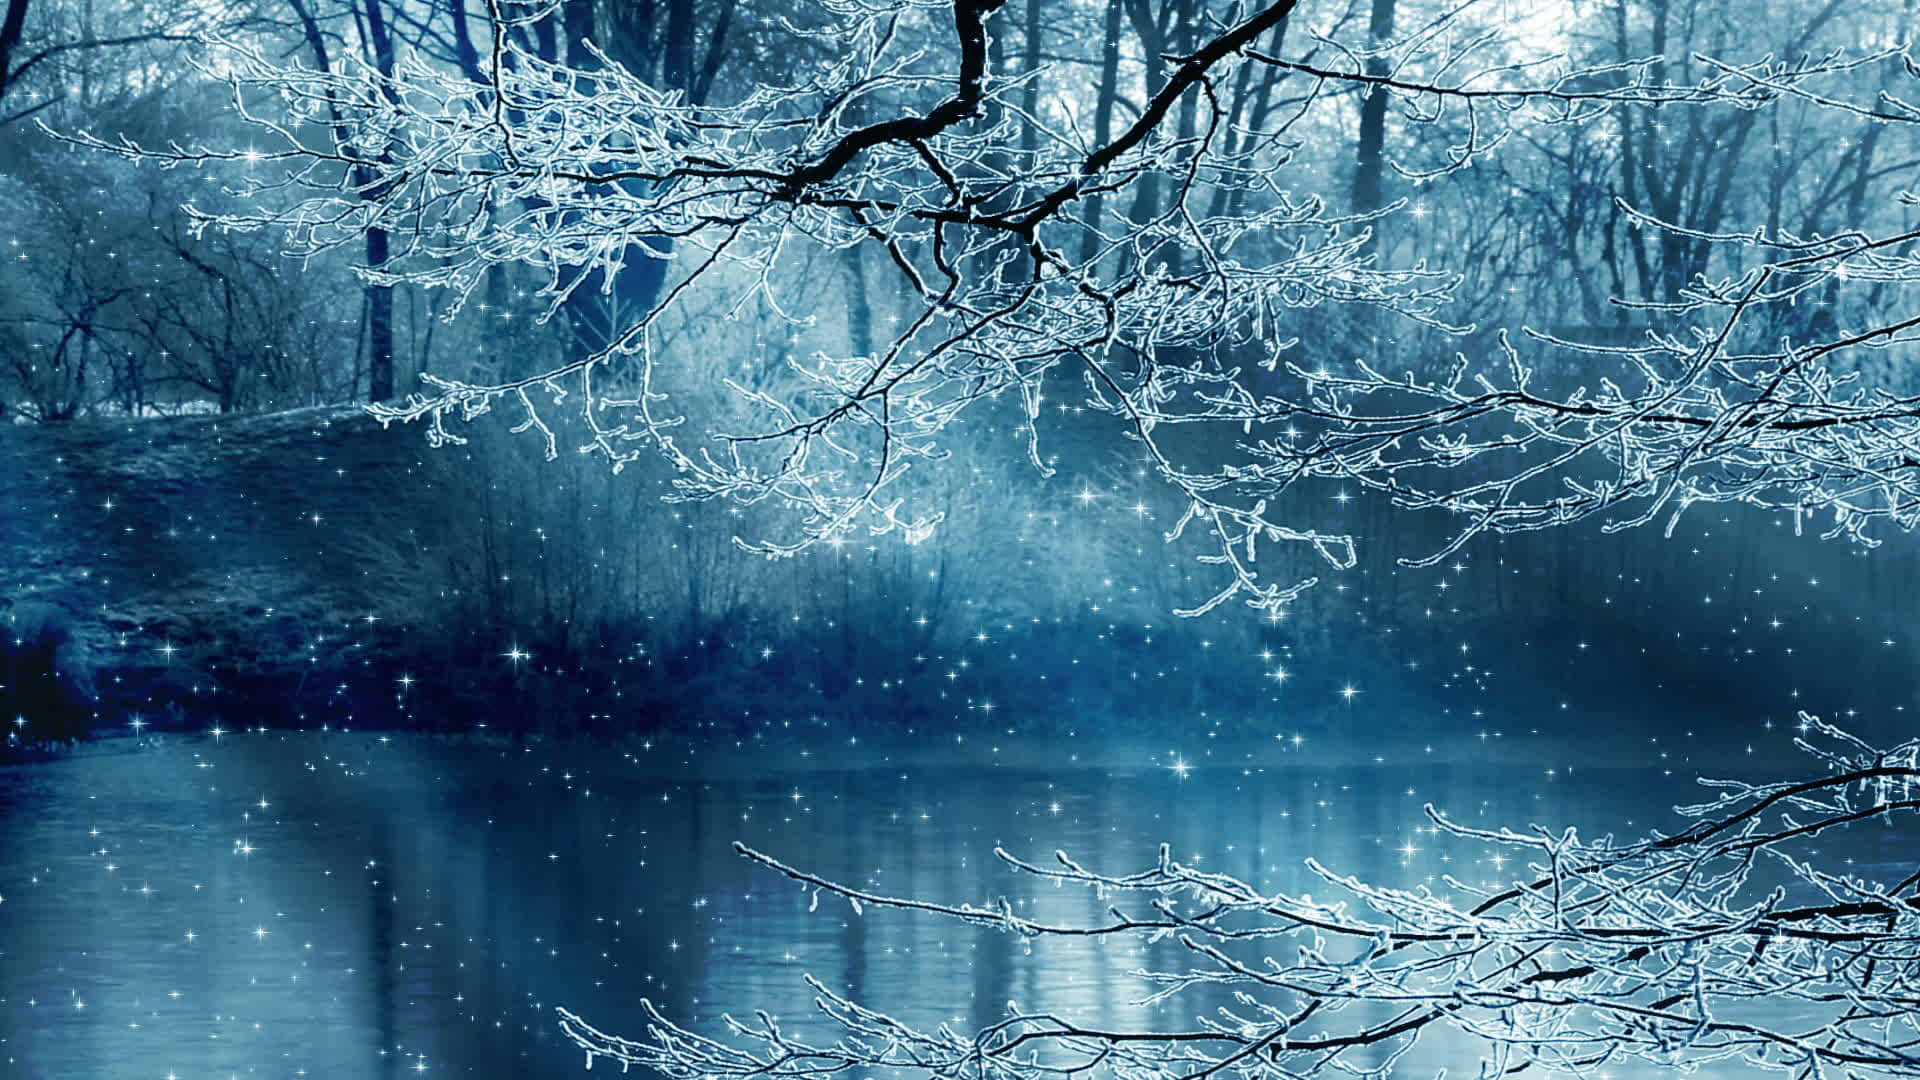 Snowy Day Winter Scenery Desktop Wallpaper